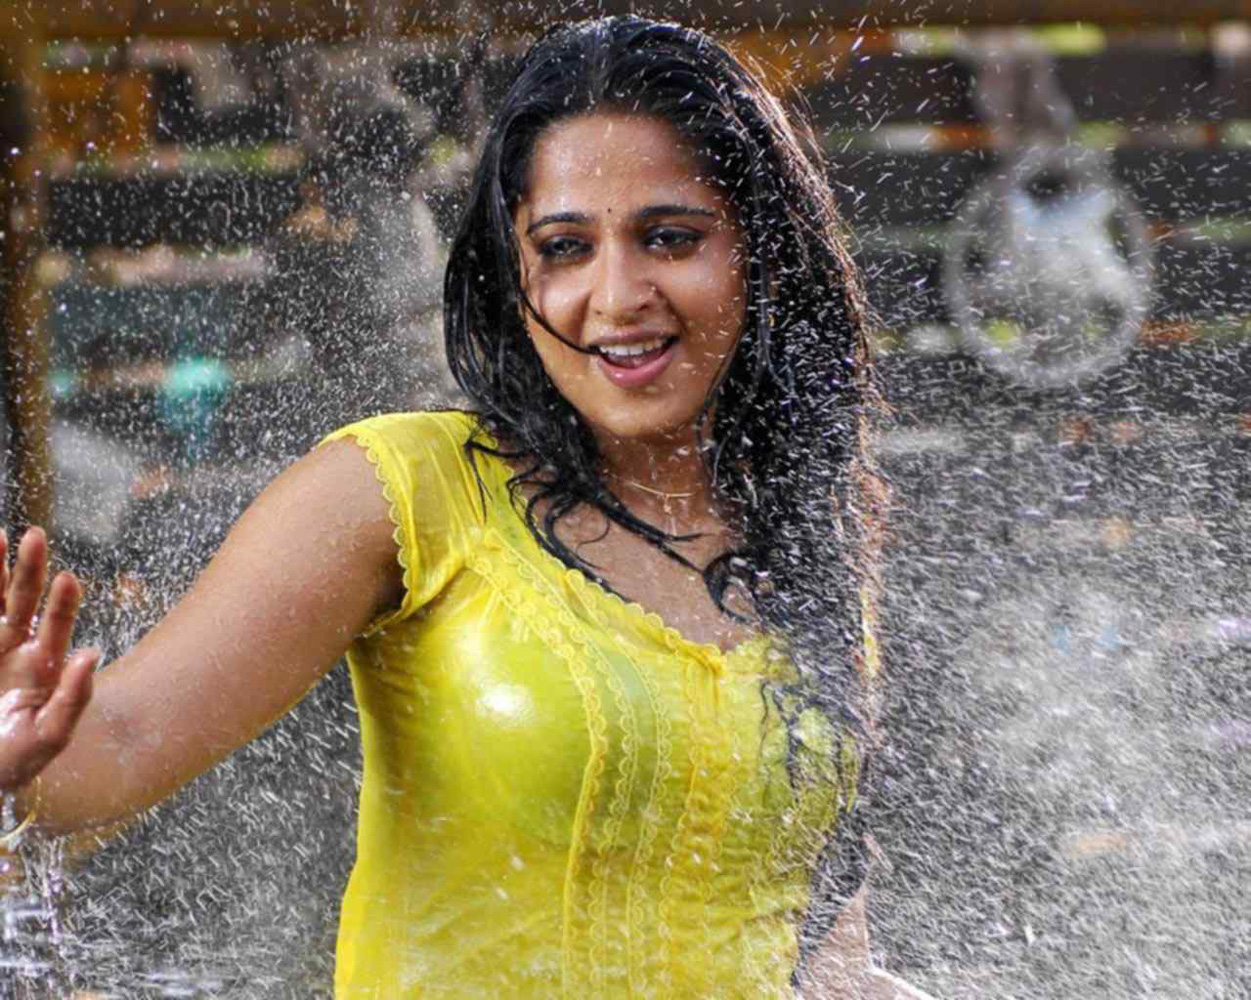 Tamil Telugu Actress Stills-Images-Photos-Images-Cute Actress-South Indian Actress (22)